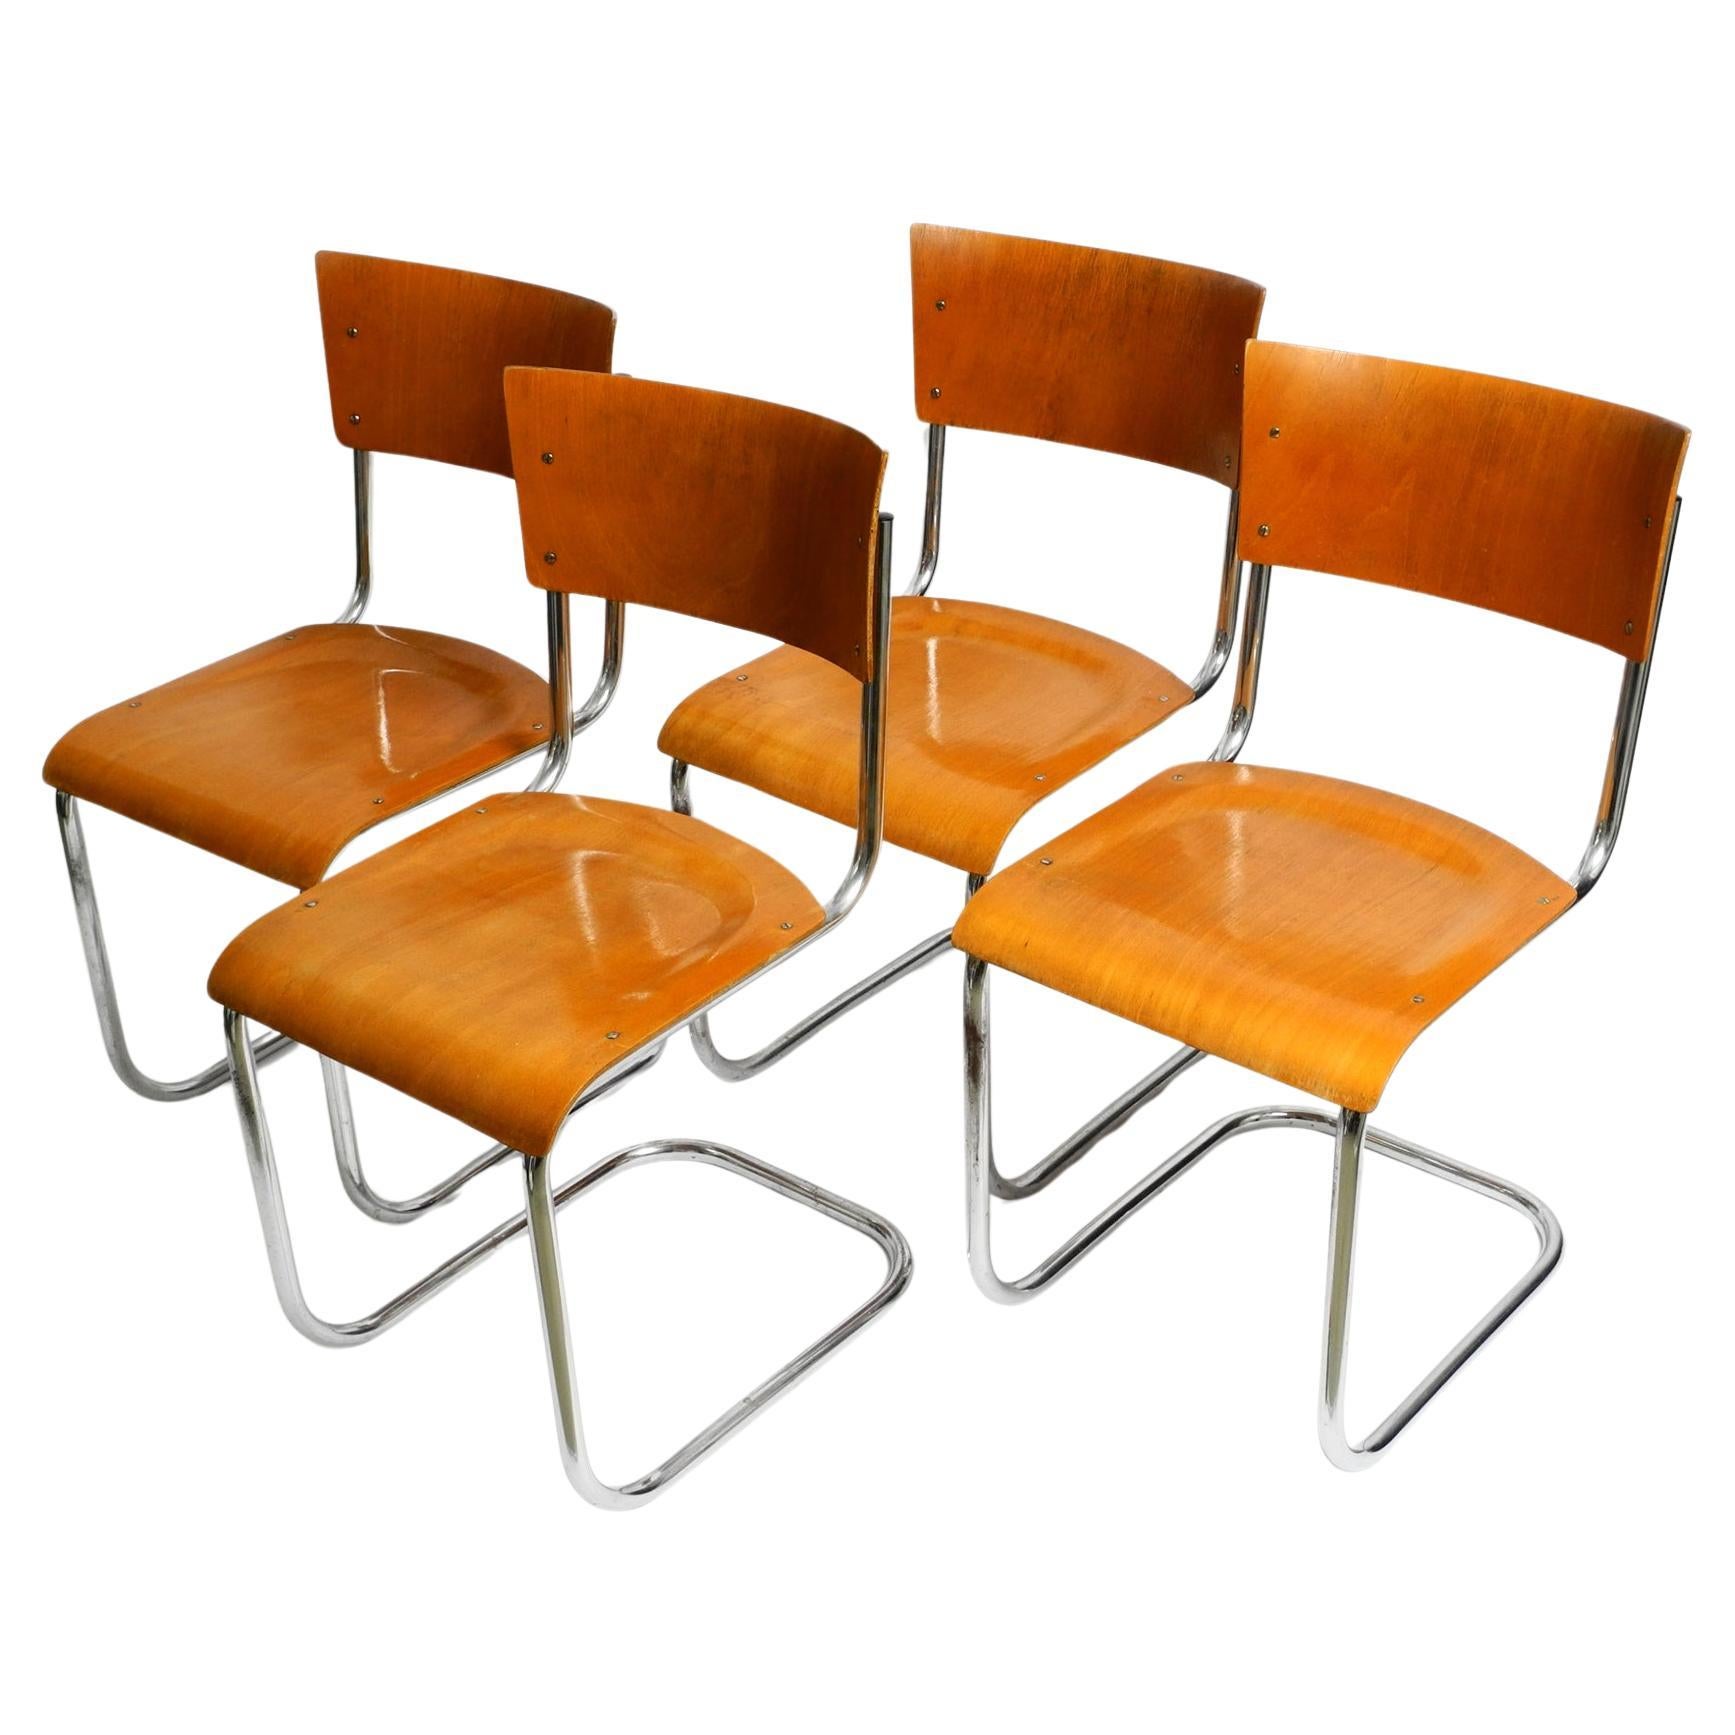 Quatre chaises cantilever Bauhaus en acier tubulaire des années 30 de Mart Stam pour Robert Slezak